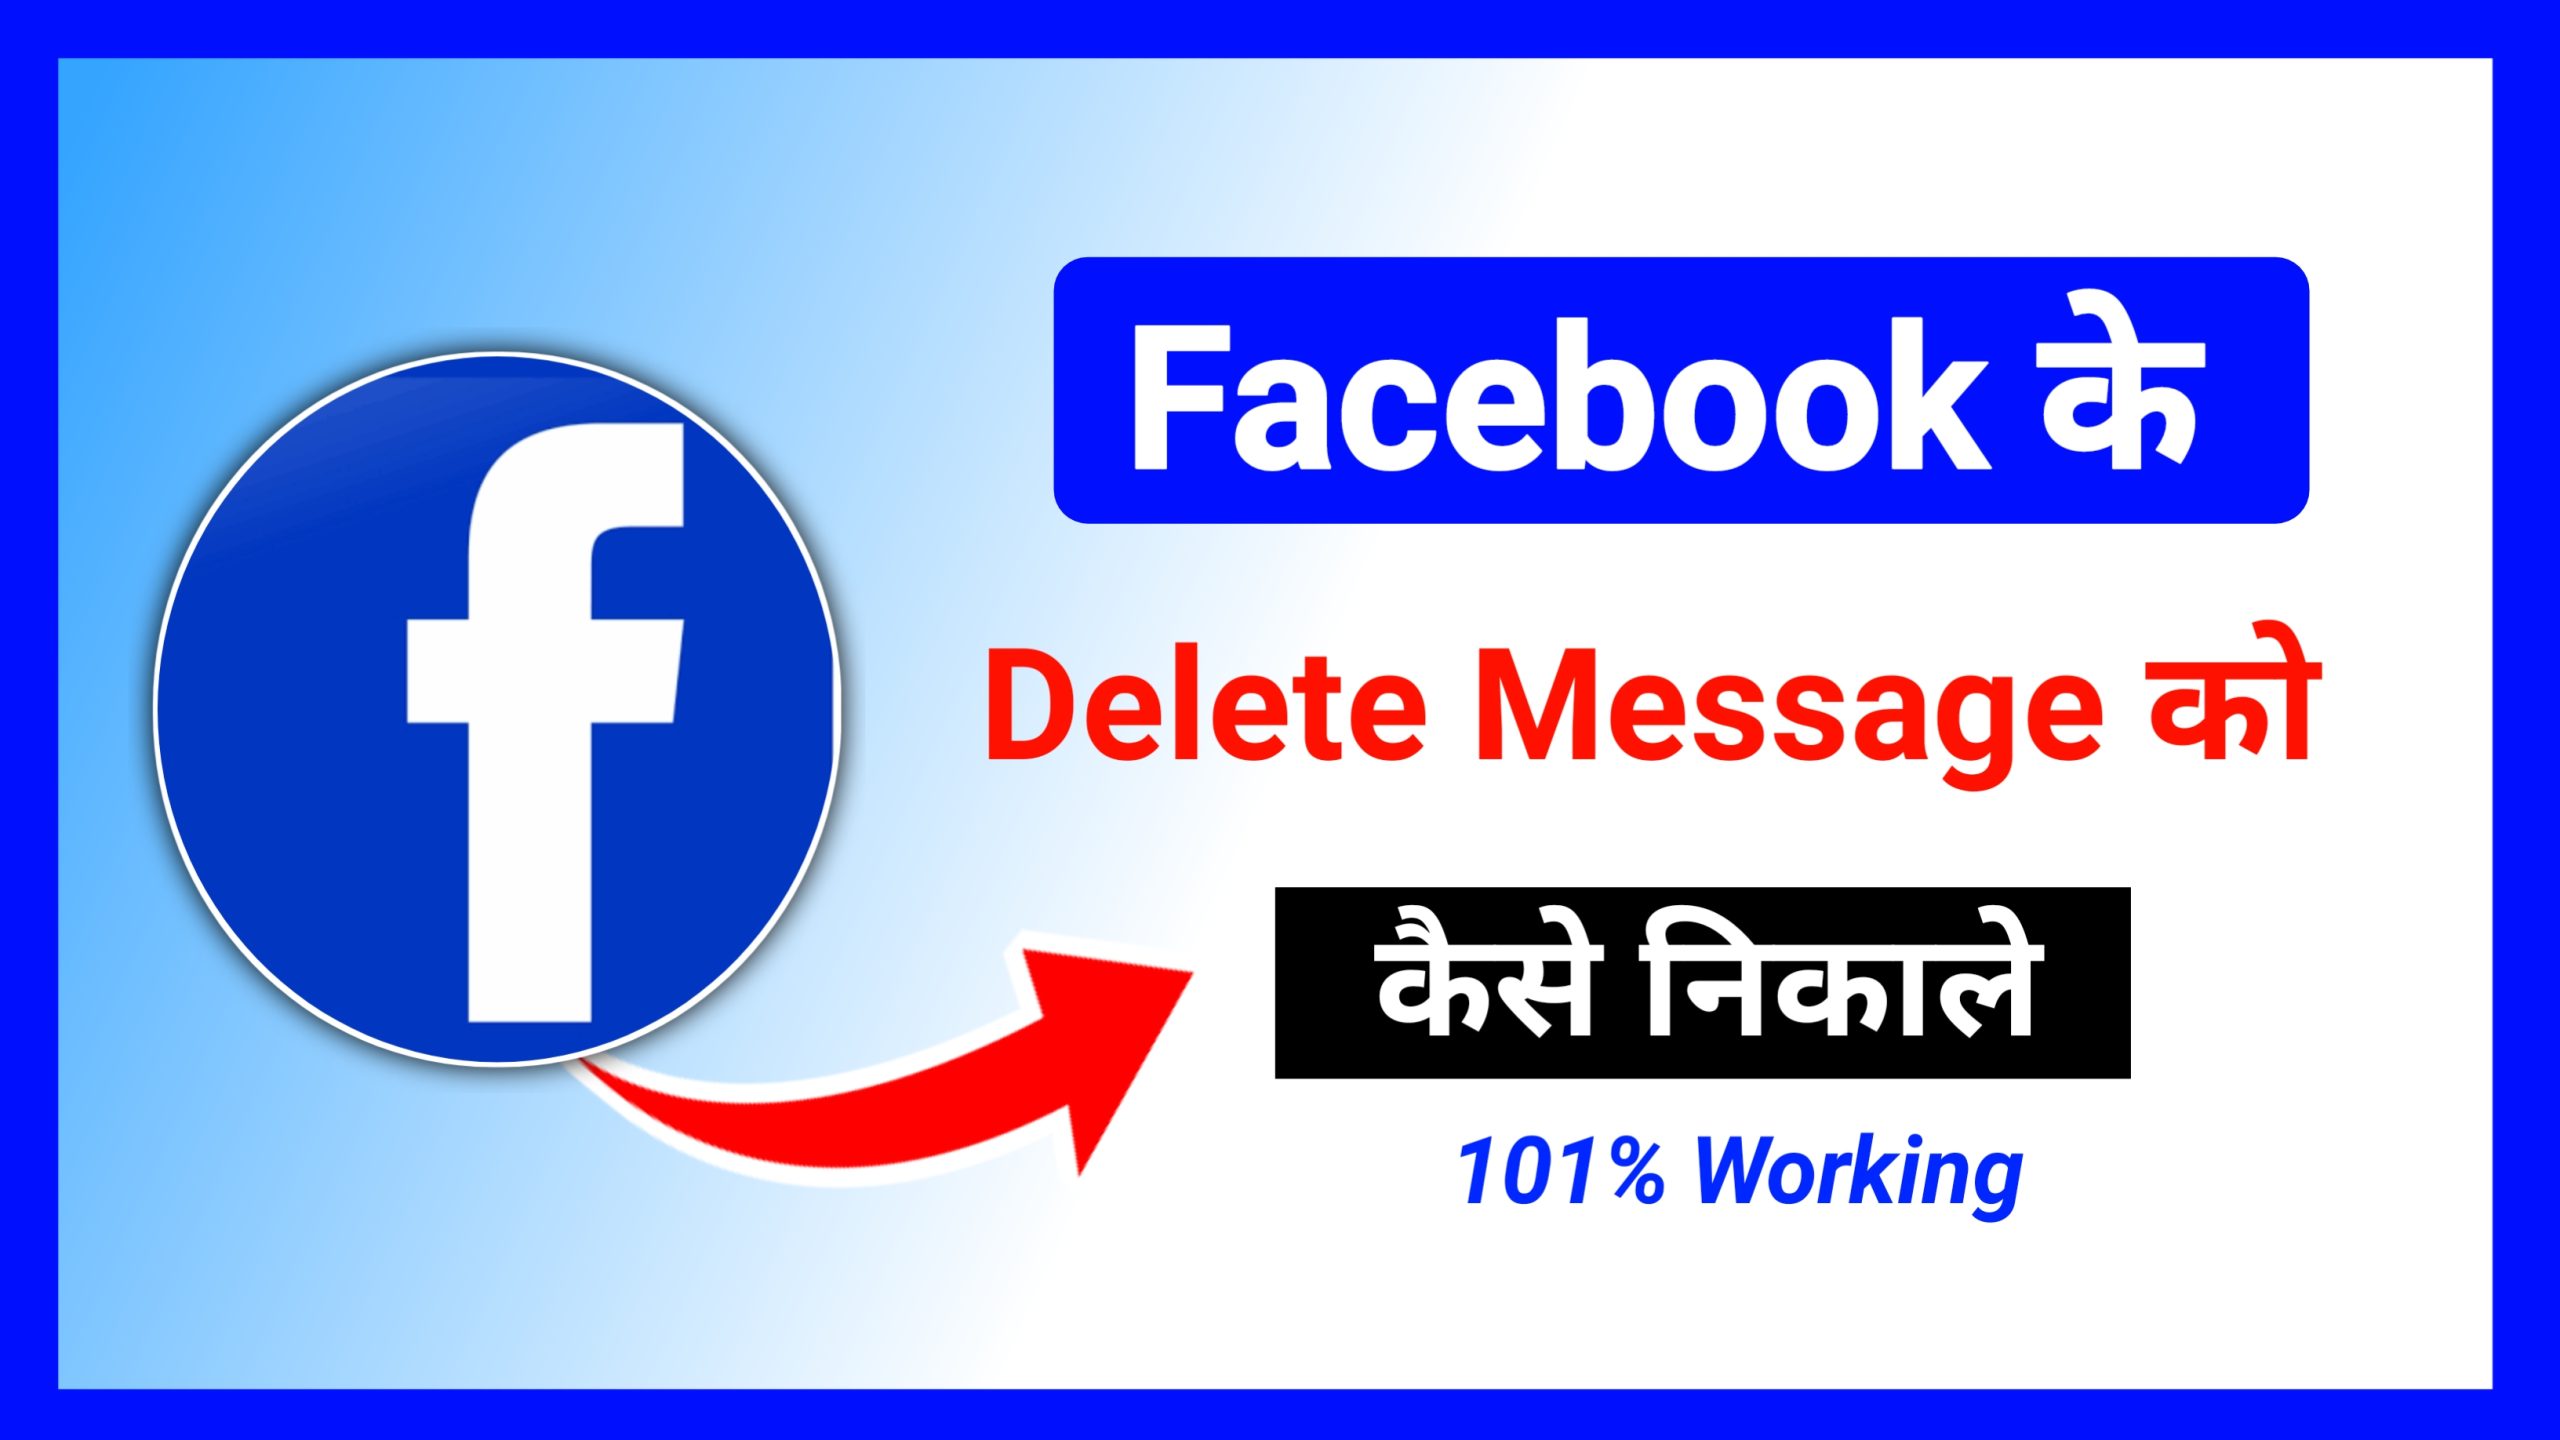 Facebook ke delete message ko kaise recover kare 